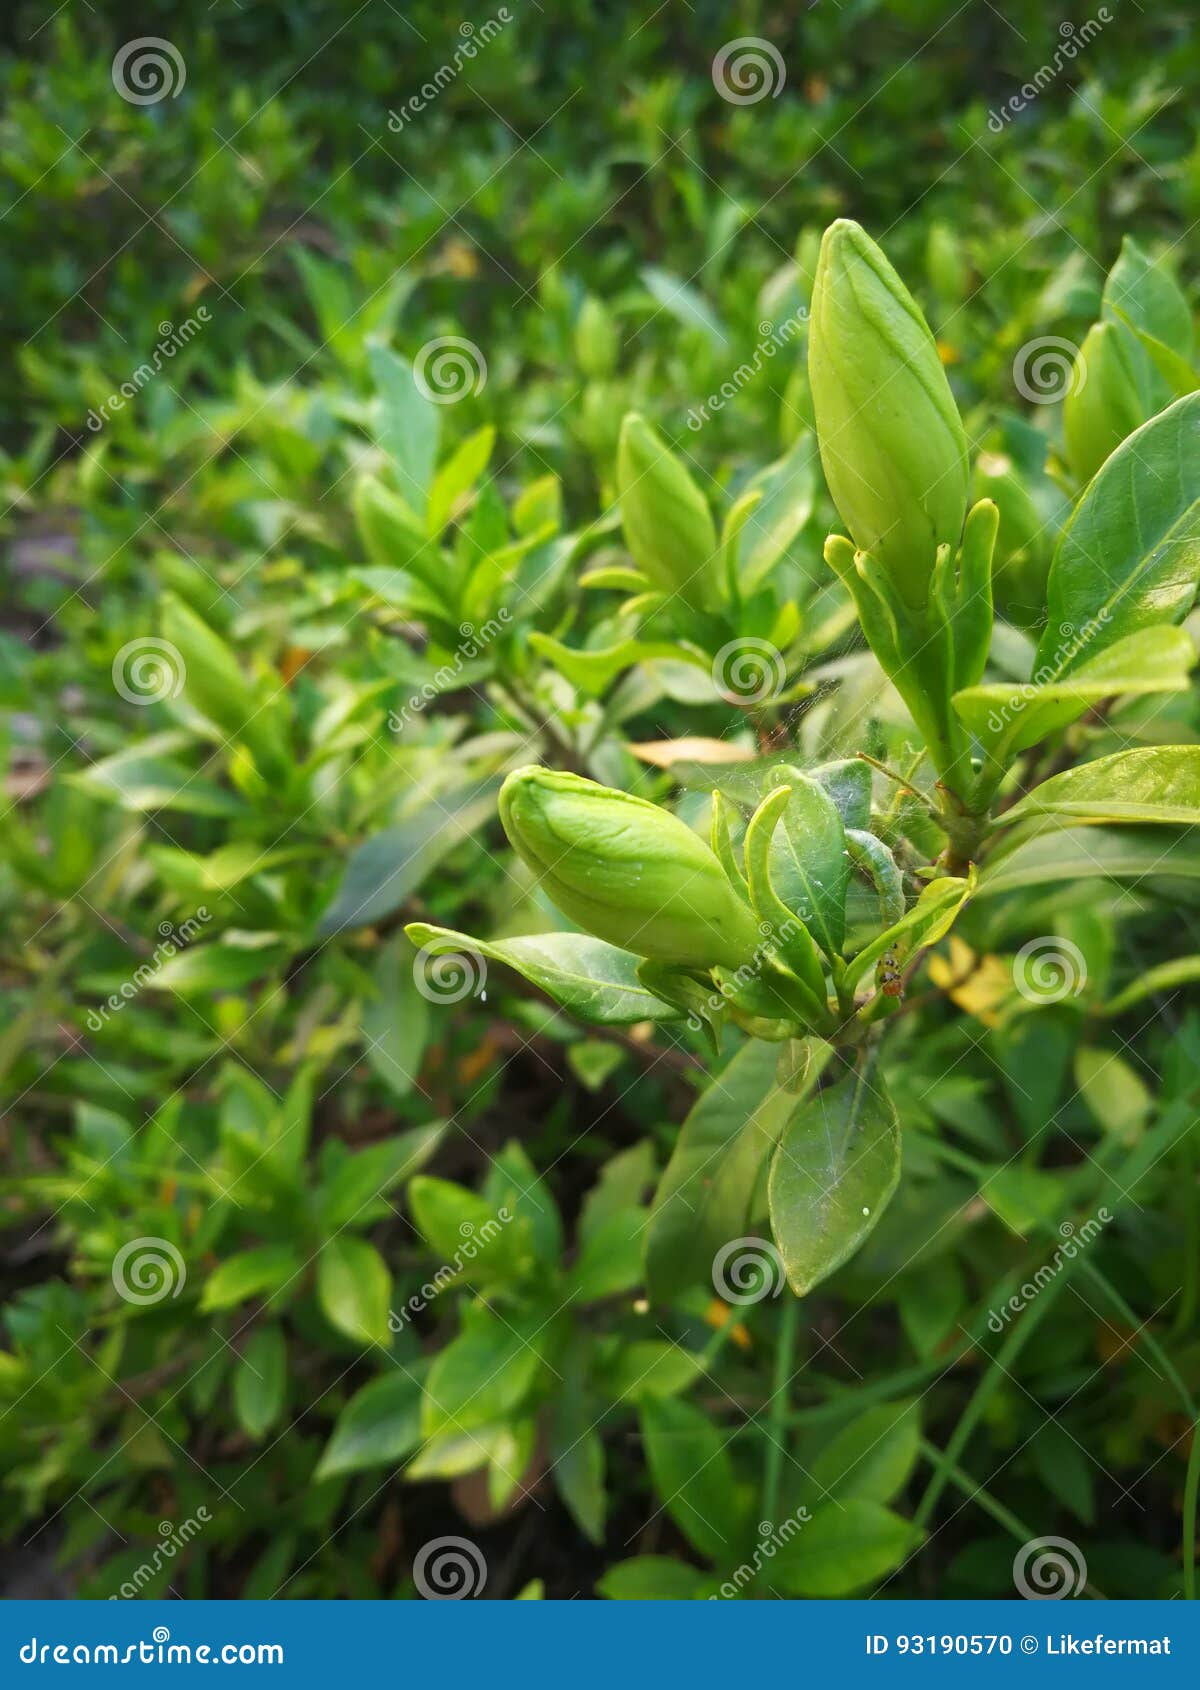 gardenia jasminoides ellis